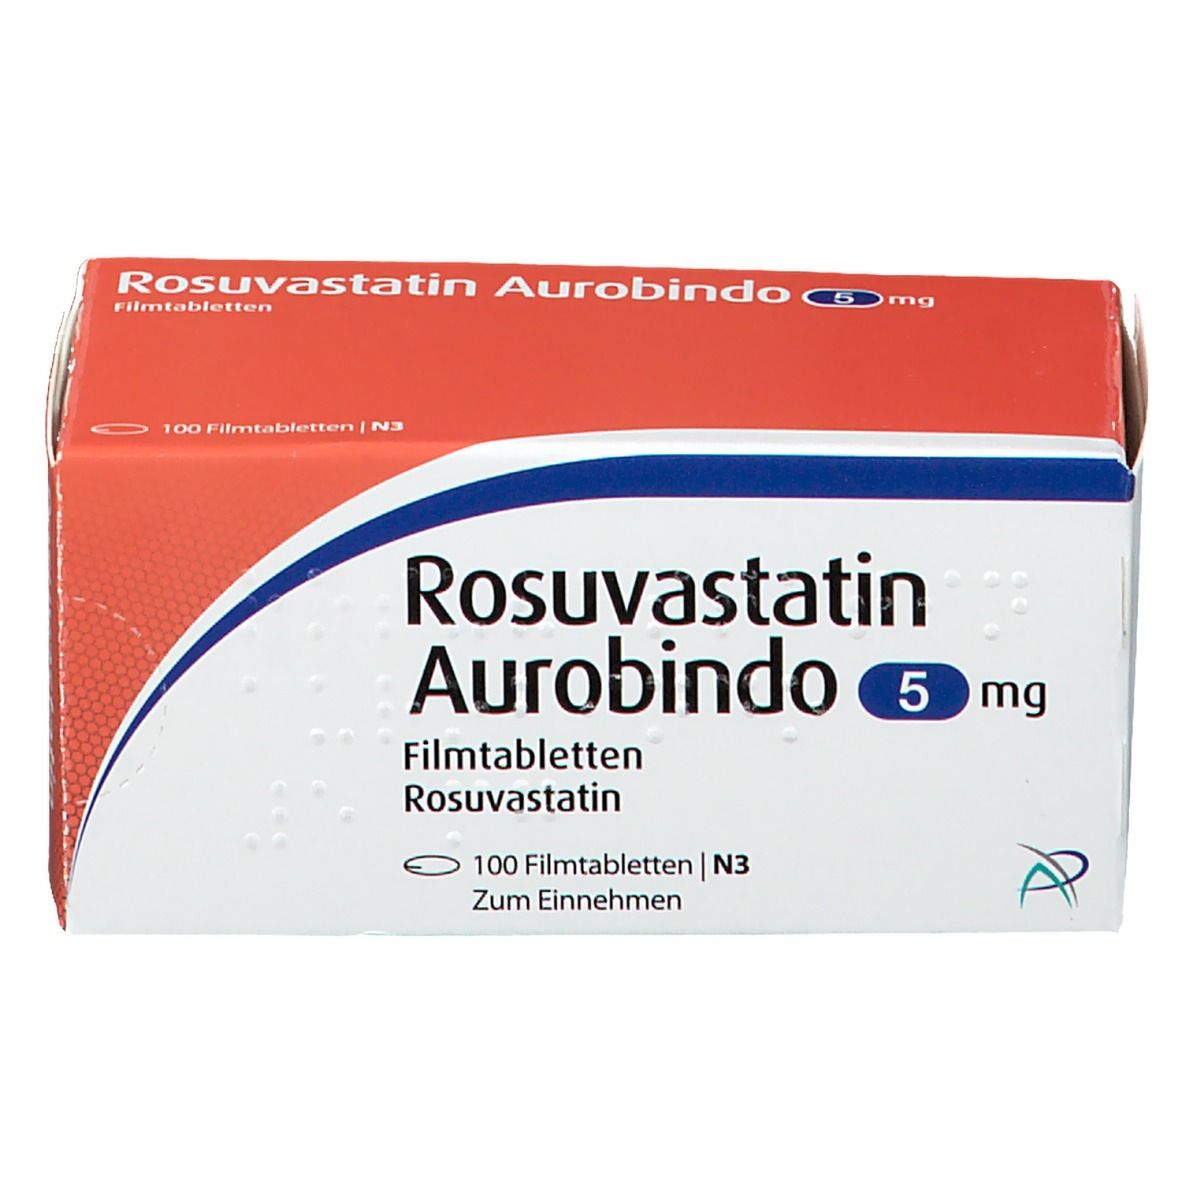 Rosuvastatin Aurobindo 5 mg